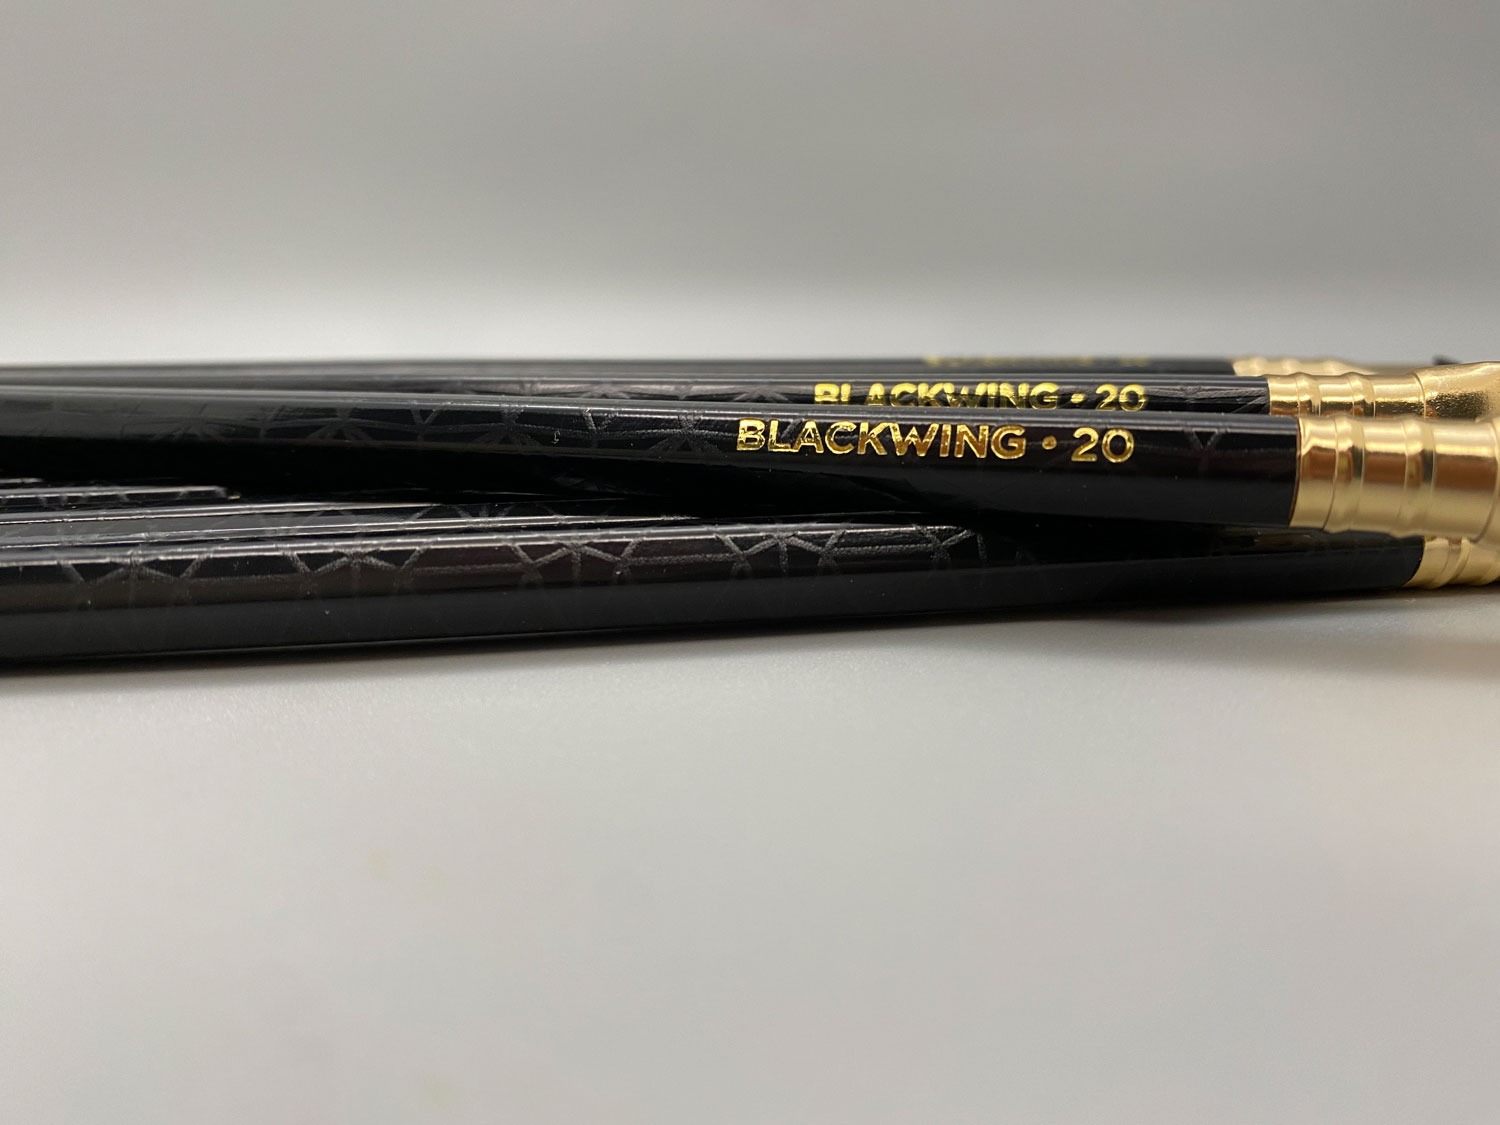 Blackwing Vol. 20